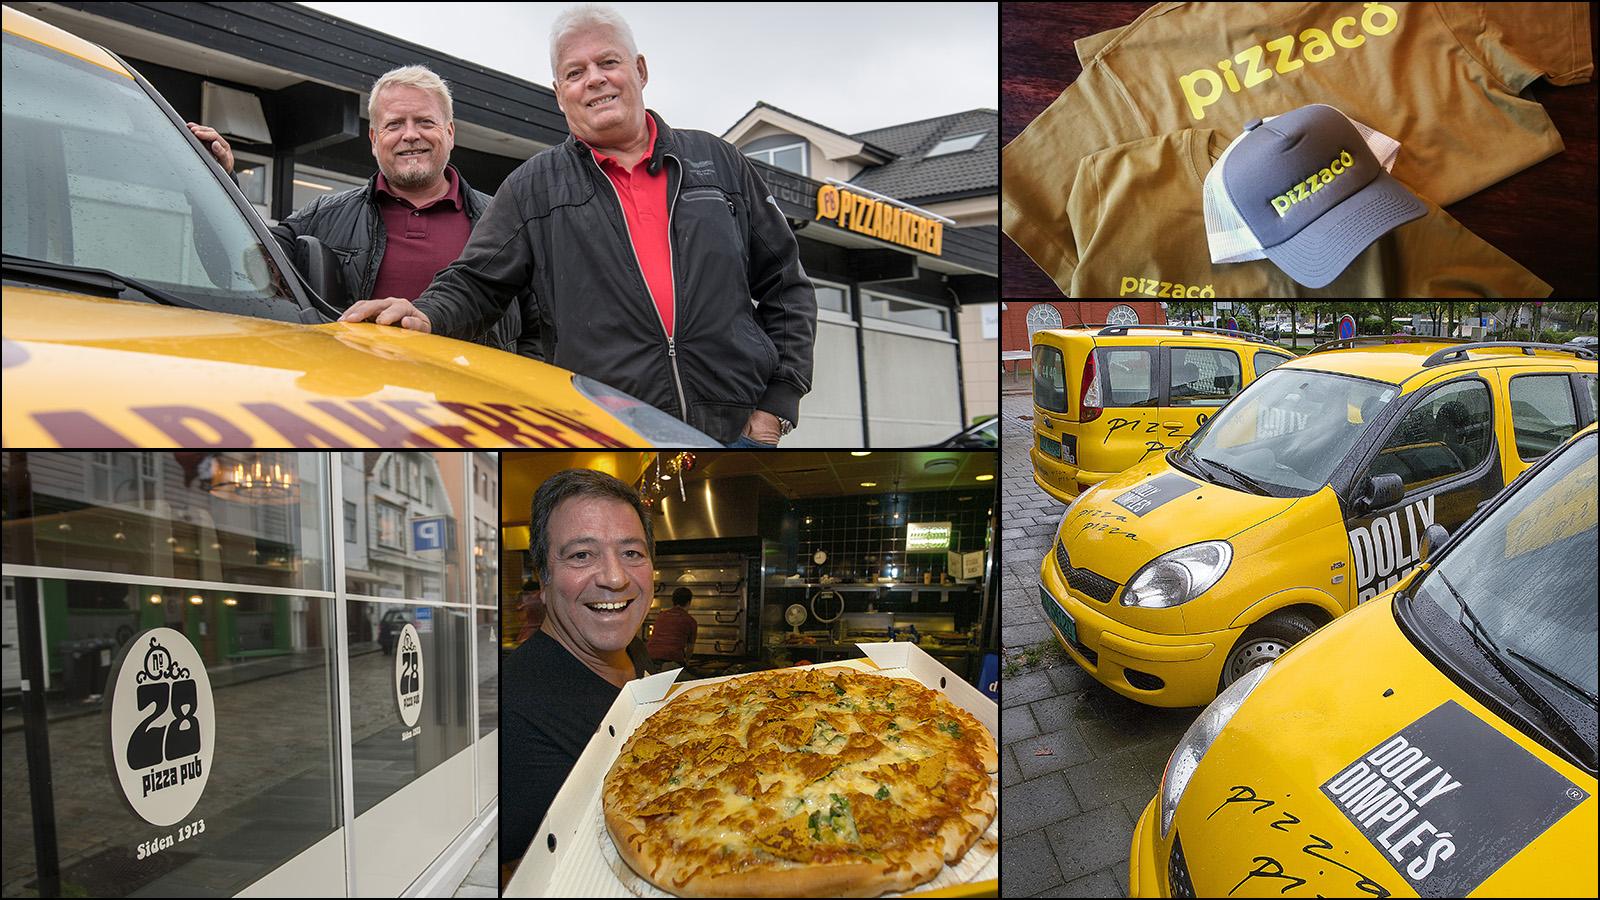 Stavanger fikk sin første pizzarestaurant i 1973. De siste 46 årene er det flere som har prøvd seg, og nå vil Pizzaco ta Norge med storm. 